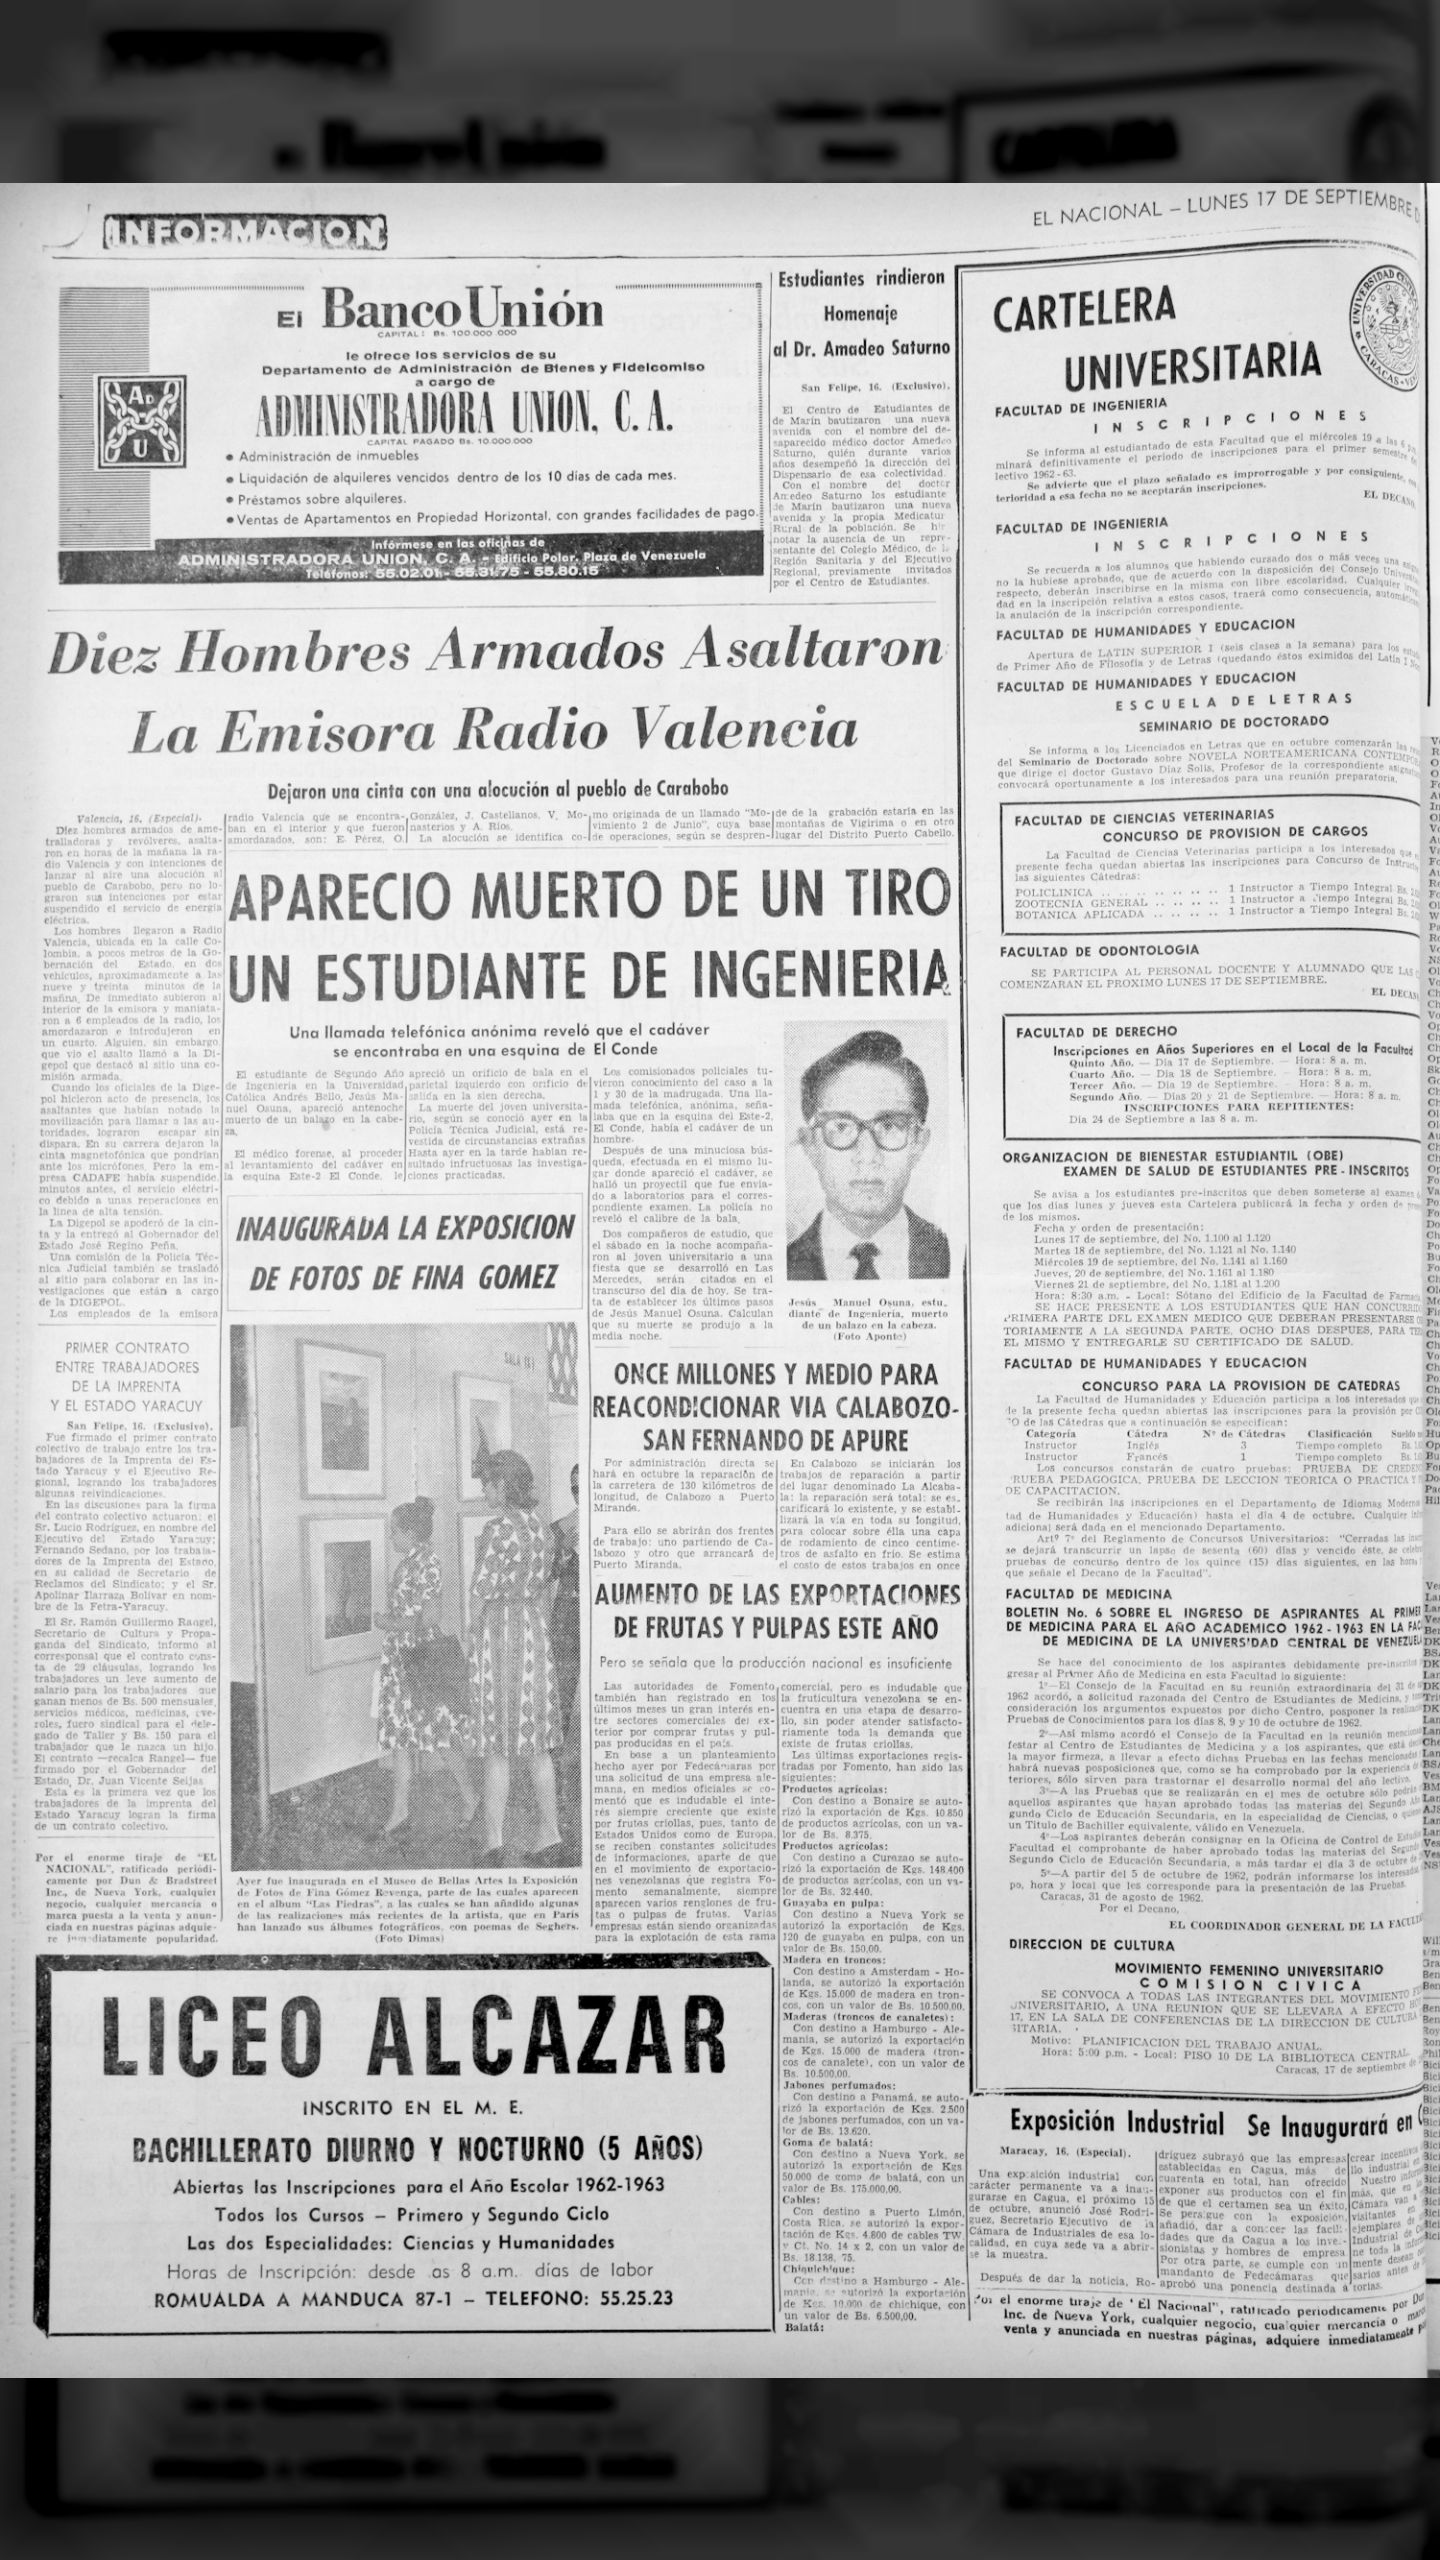 Apareció muerto de un tiro un estudiante de ingeniería (El Nacional, 17 de septiembre 1962)